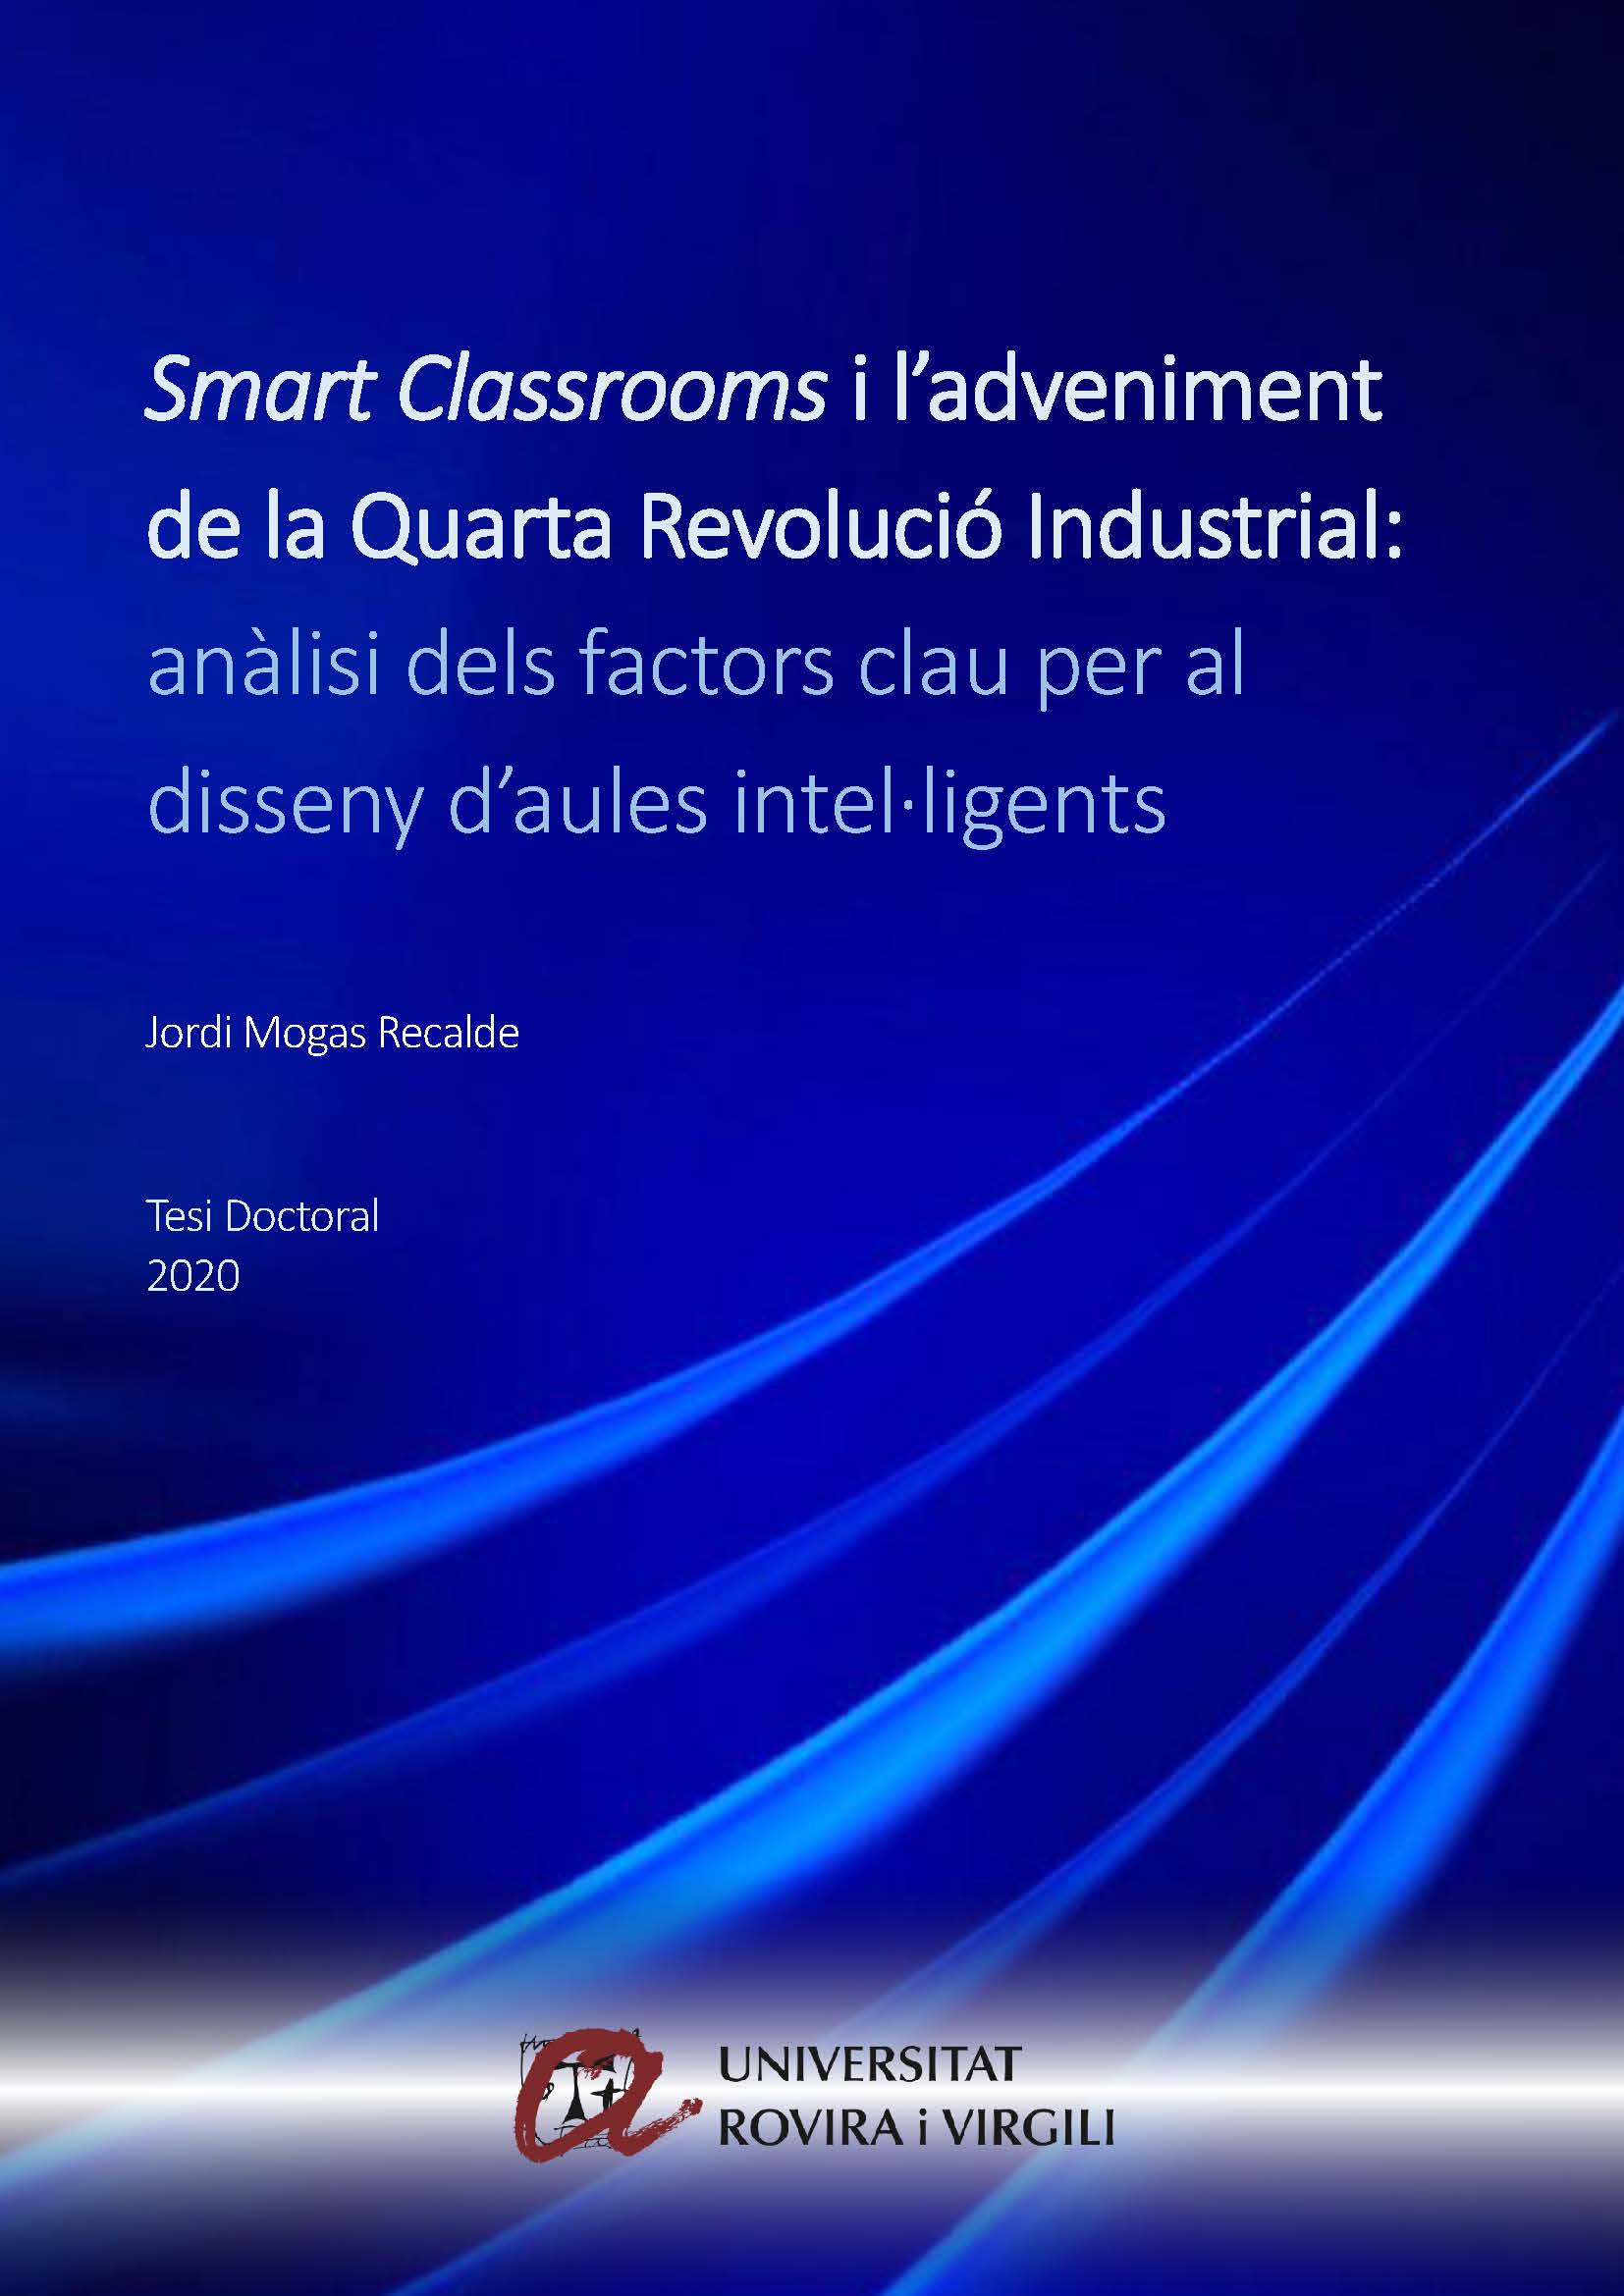 Smart Classrooms i l’adveniment de la Quarta Revolució Industrial: anàlisi dels factors clau per al diseny d'aules intel·ligents